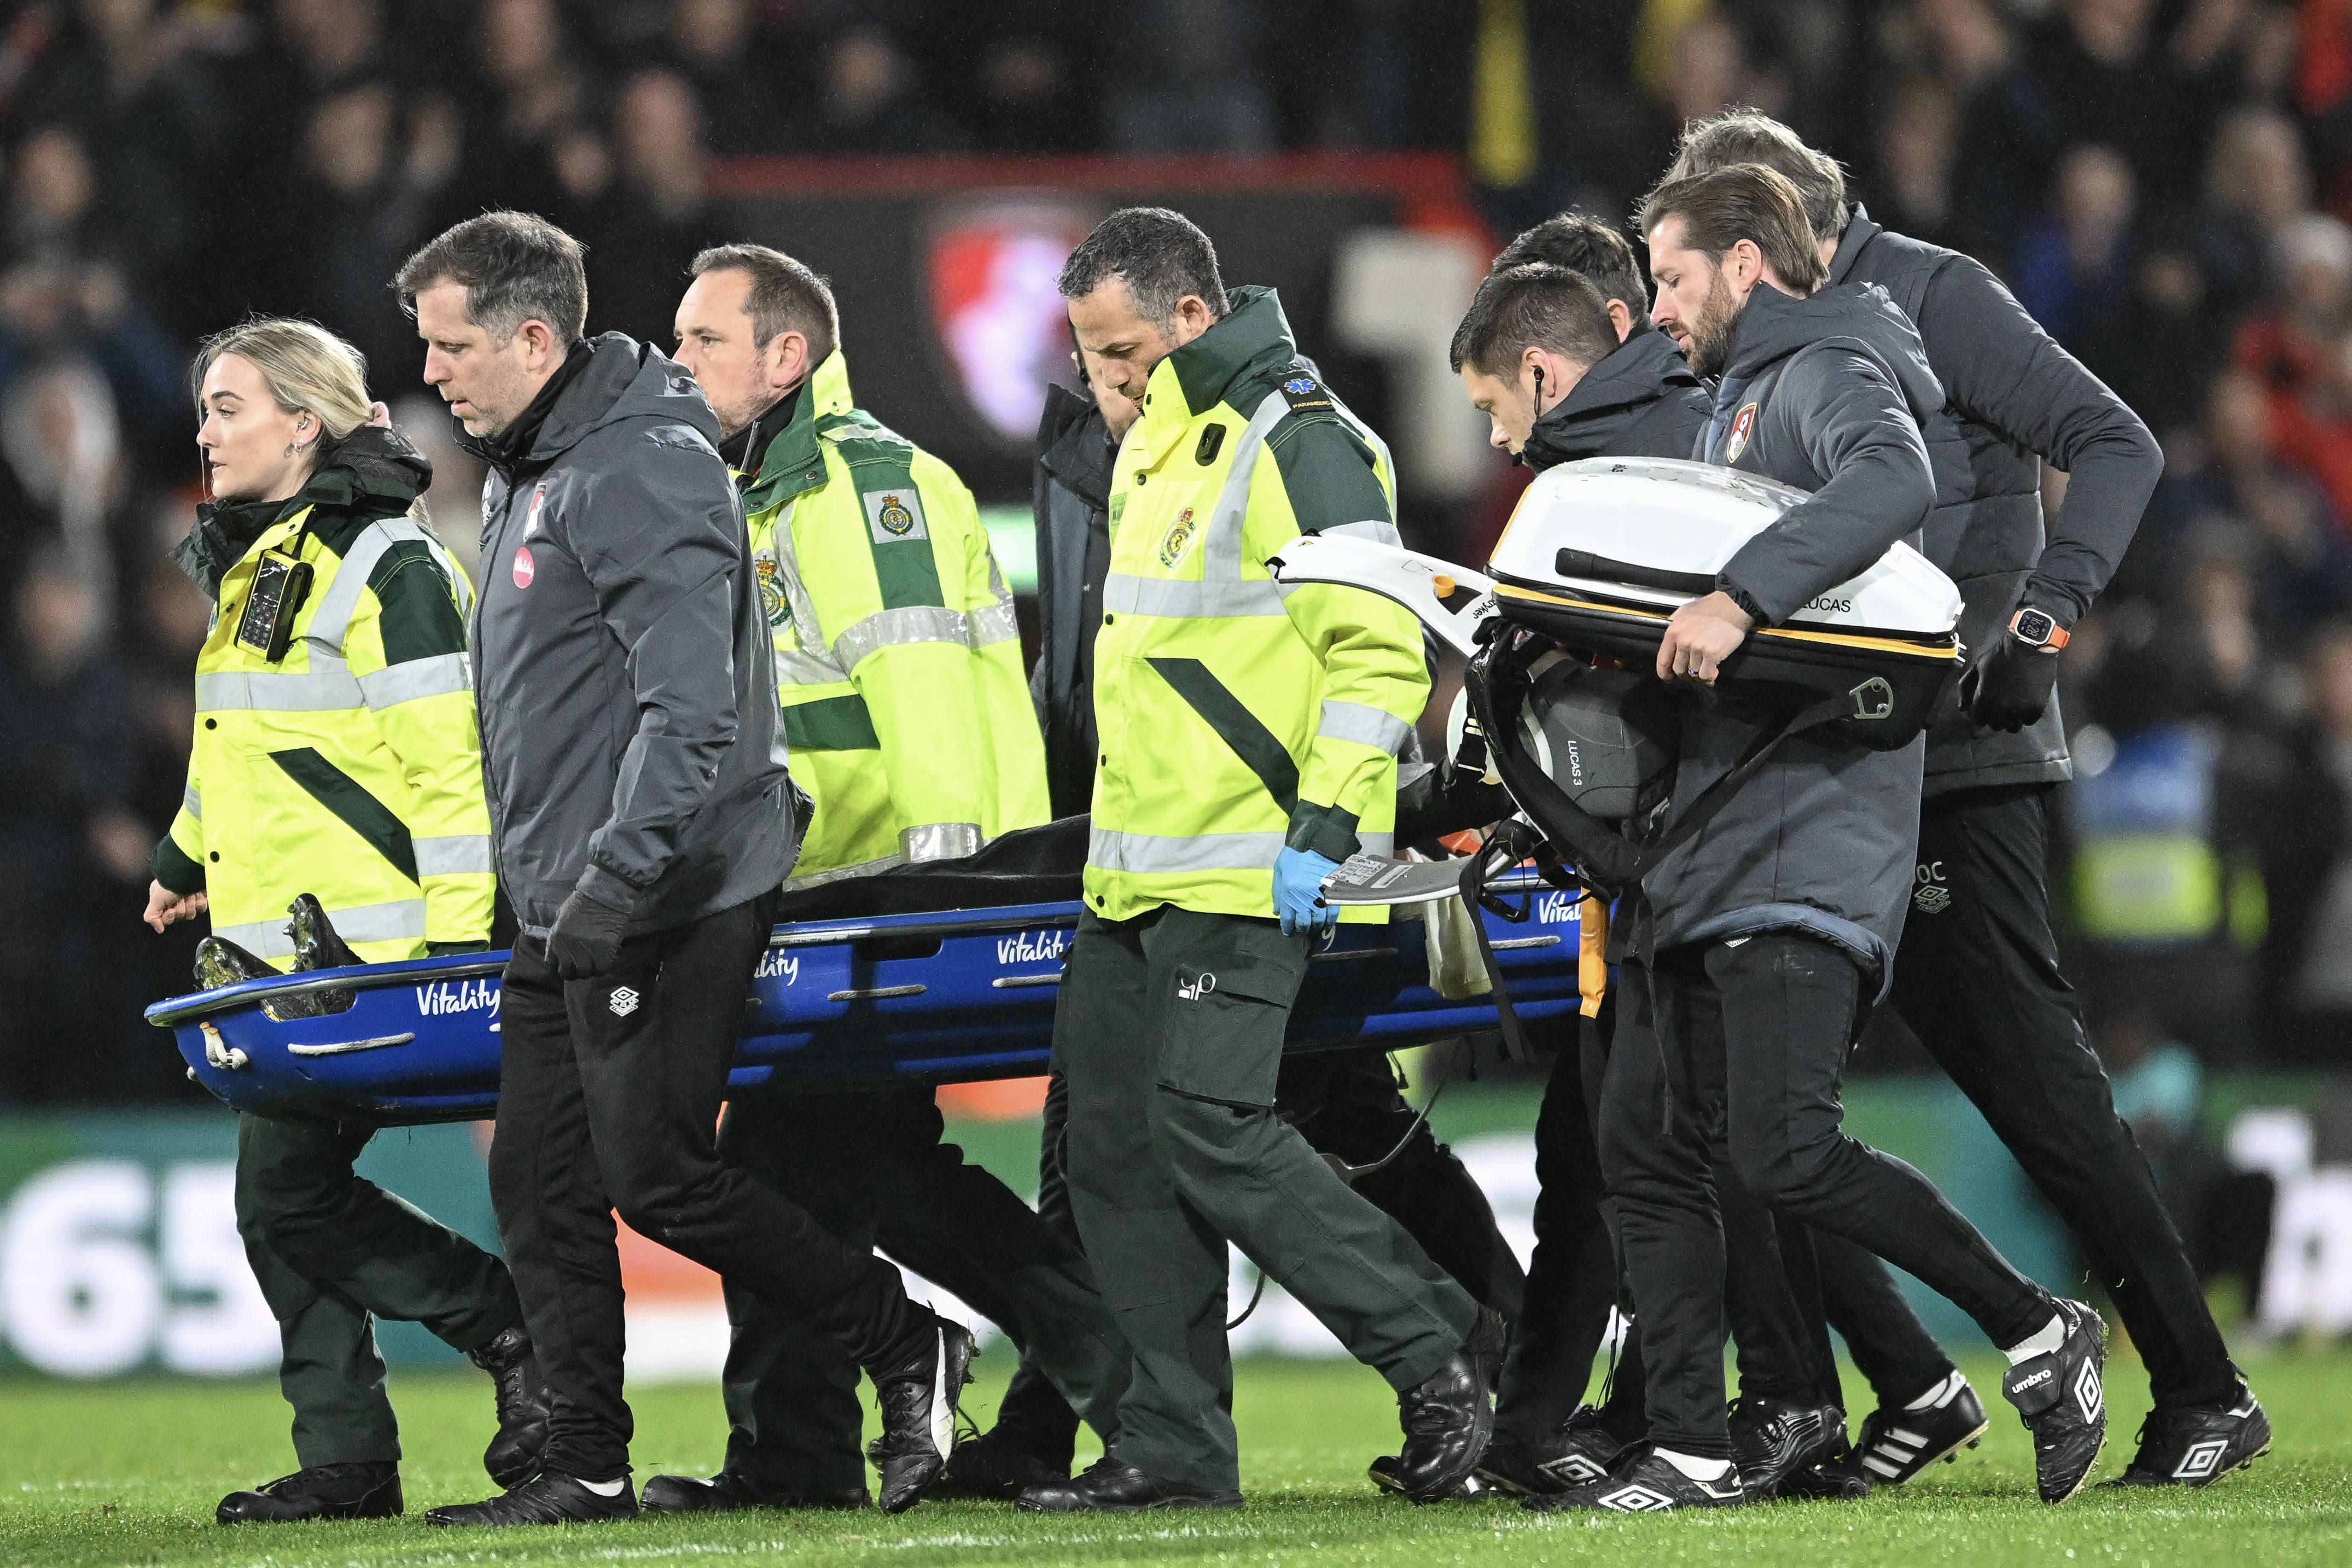 Capitão do Luton Town colapsa em campo. Premier League suspende jogo